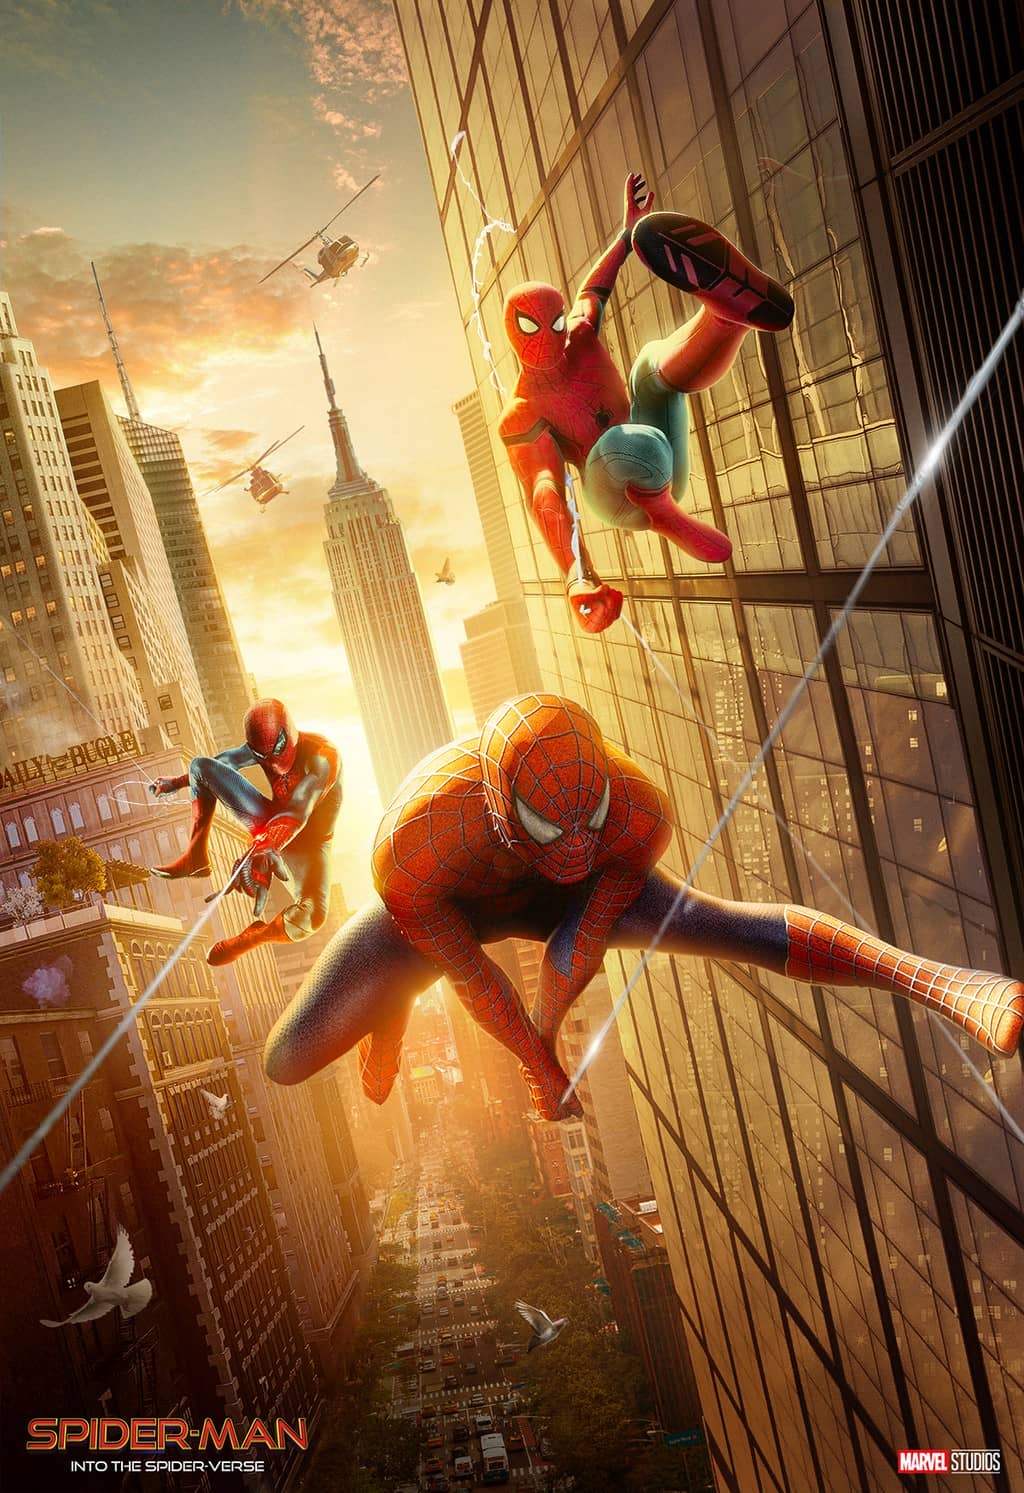 WandaVision khiến fan “rùng mình” khi sớm hé lộ ngày phát hành trailer Spider-Man 3 ảnh 2